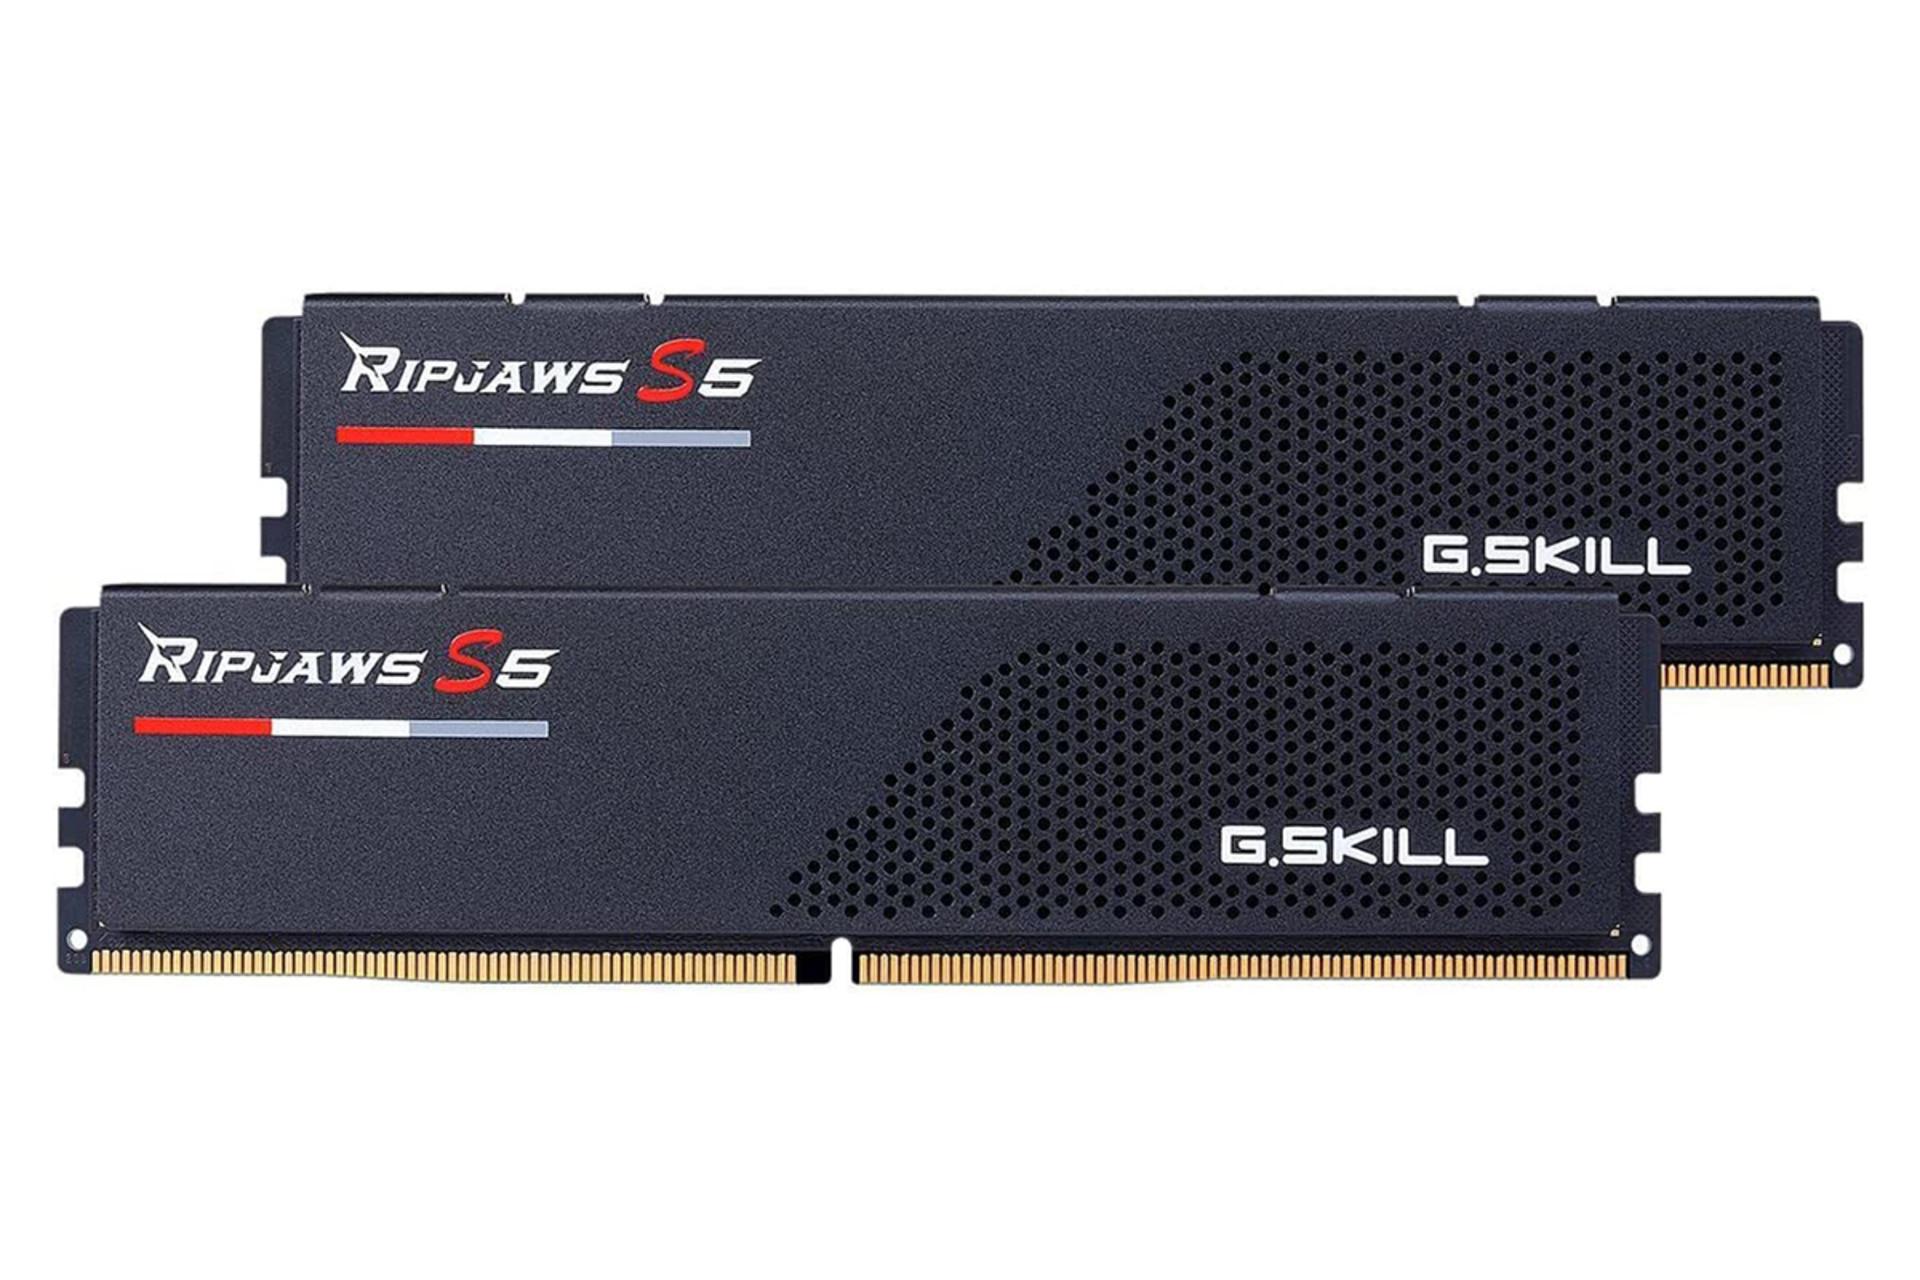 نمای رم جی اسکیل Ripjaws S5 ظرفیت 64 گیگابایت (2x32) از نوع DDR5-5600 بصورت دوتایی